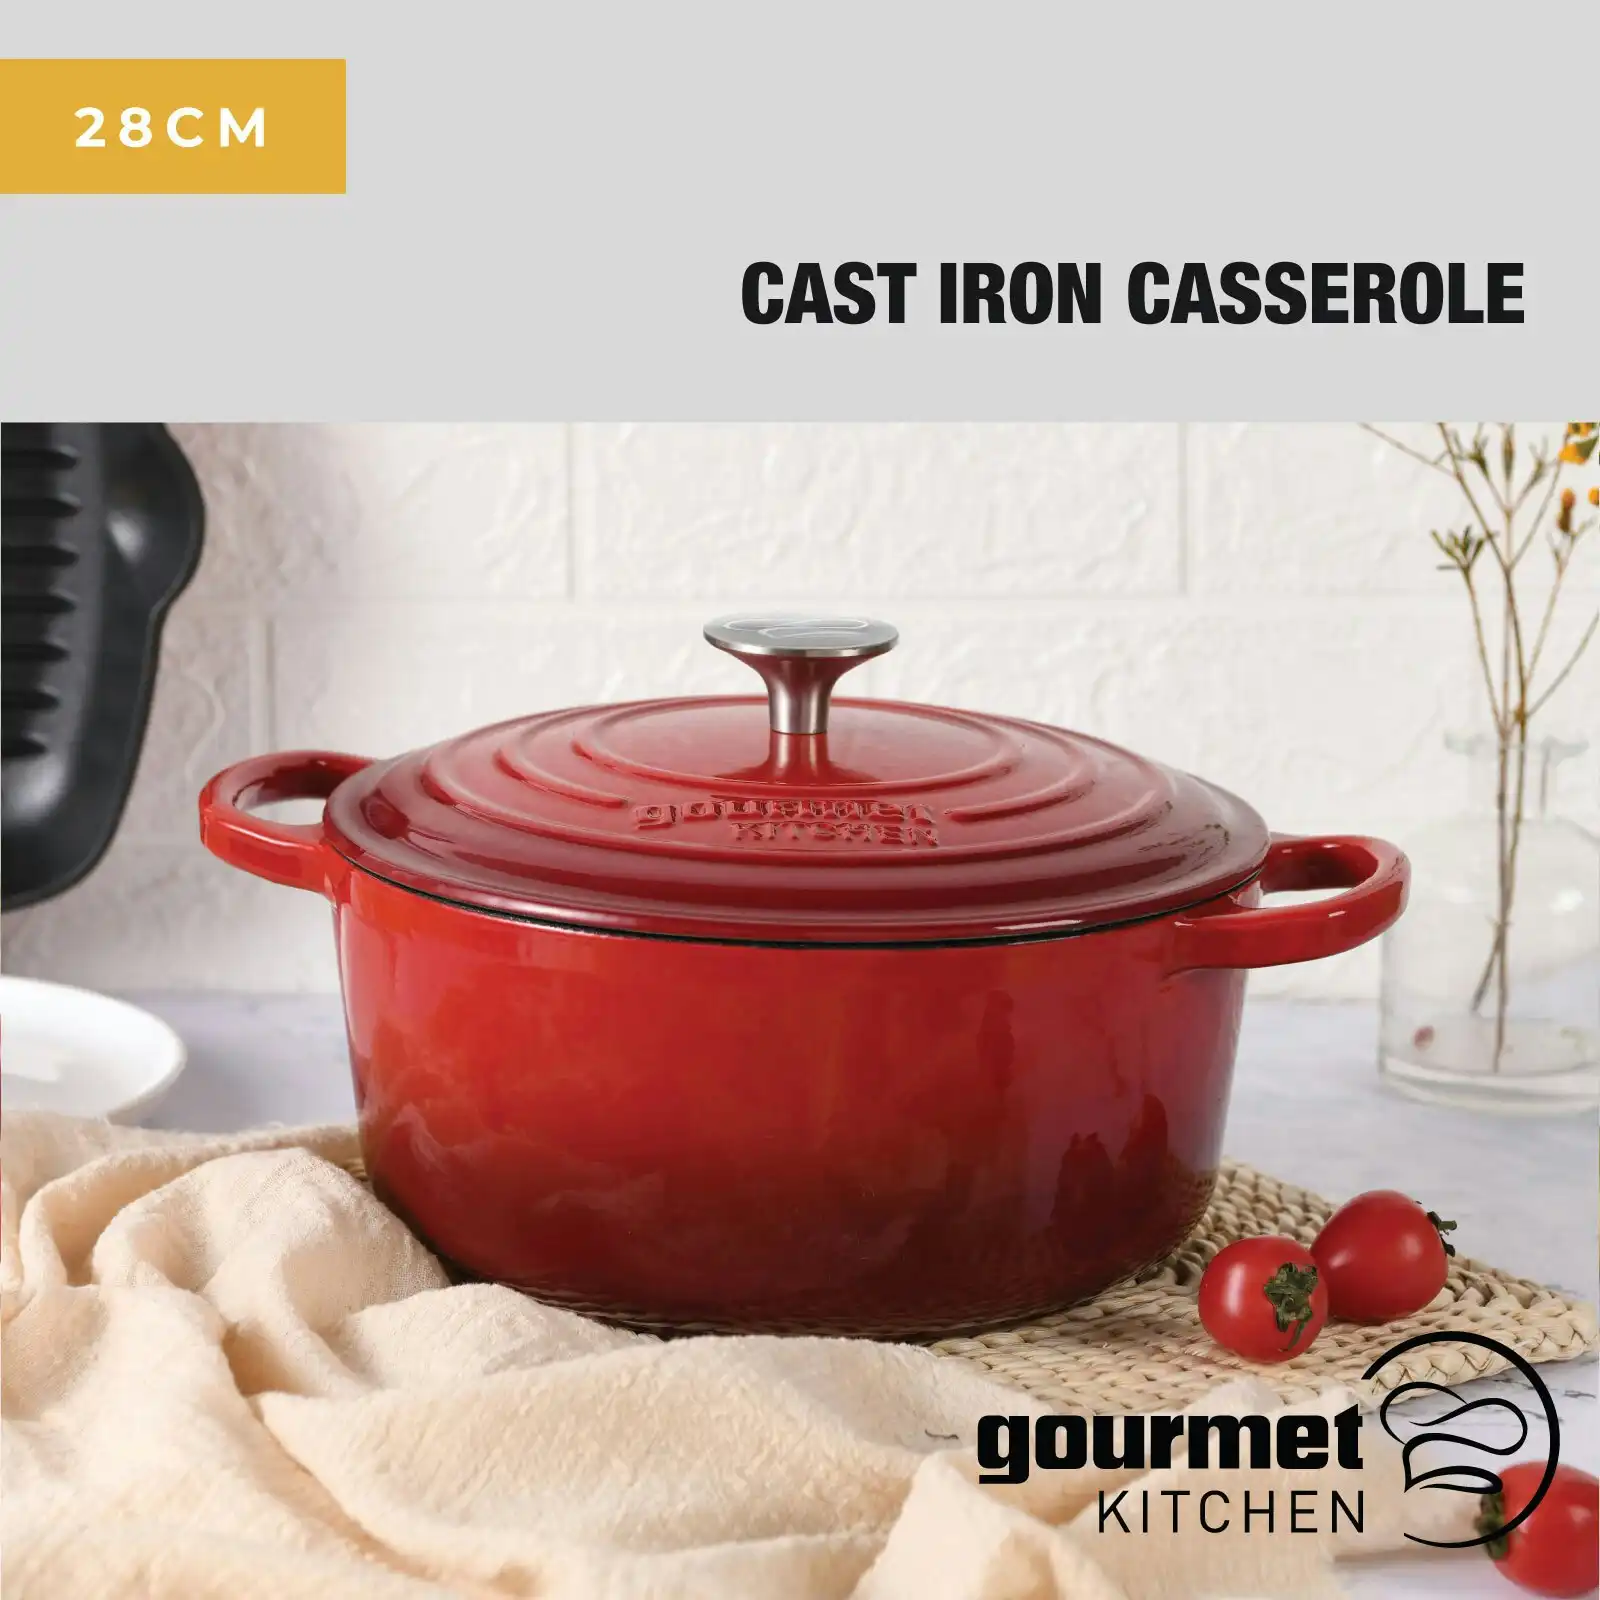 Gourmet Kitchen Cast Iron Casserole 28 cm Black Cherry Red